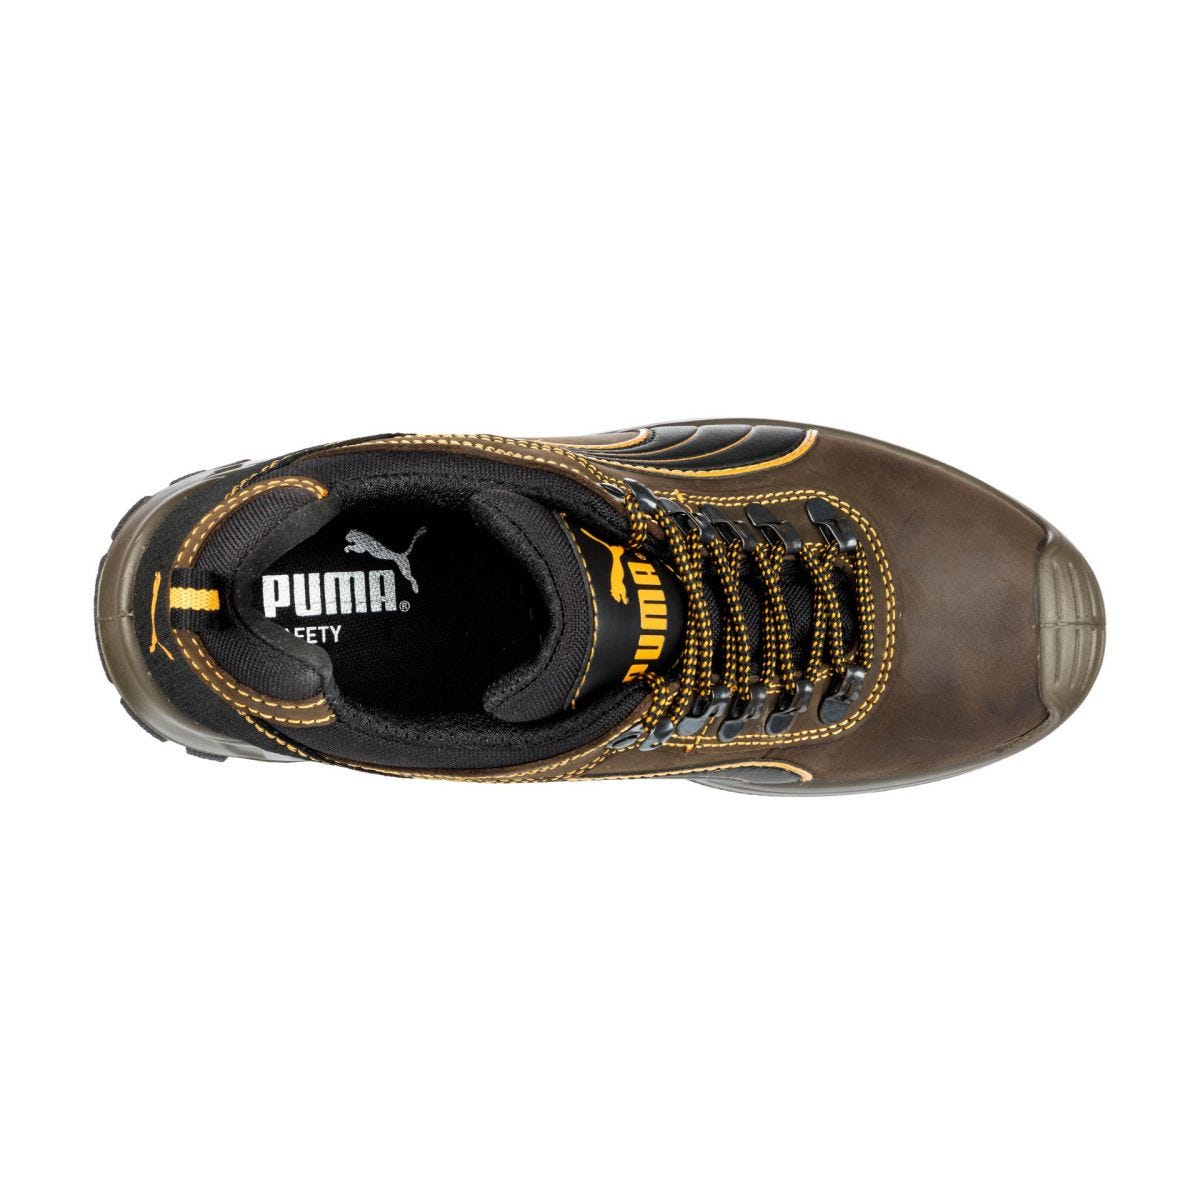 Chaussures de sécurité Sierra Nevada low S3 HRO SRC - Puma - Taille 42 2